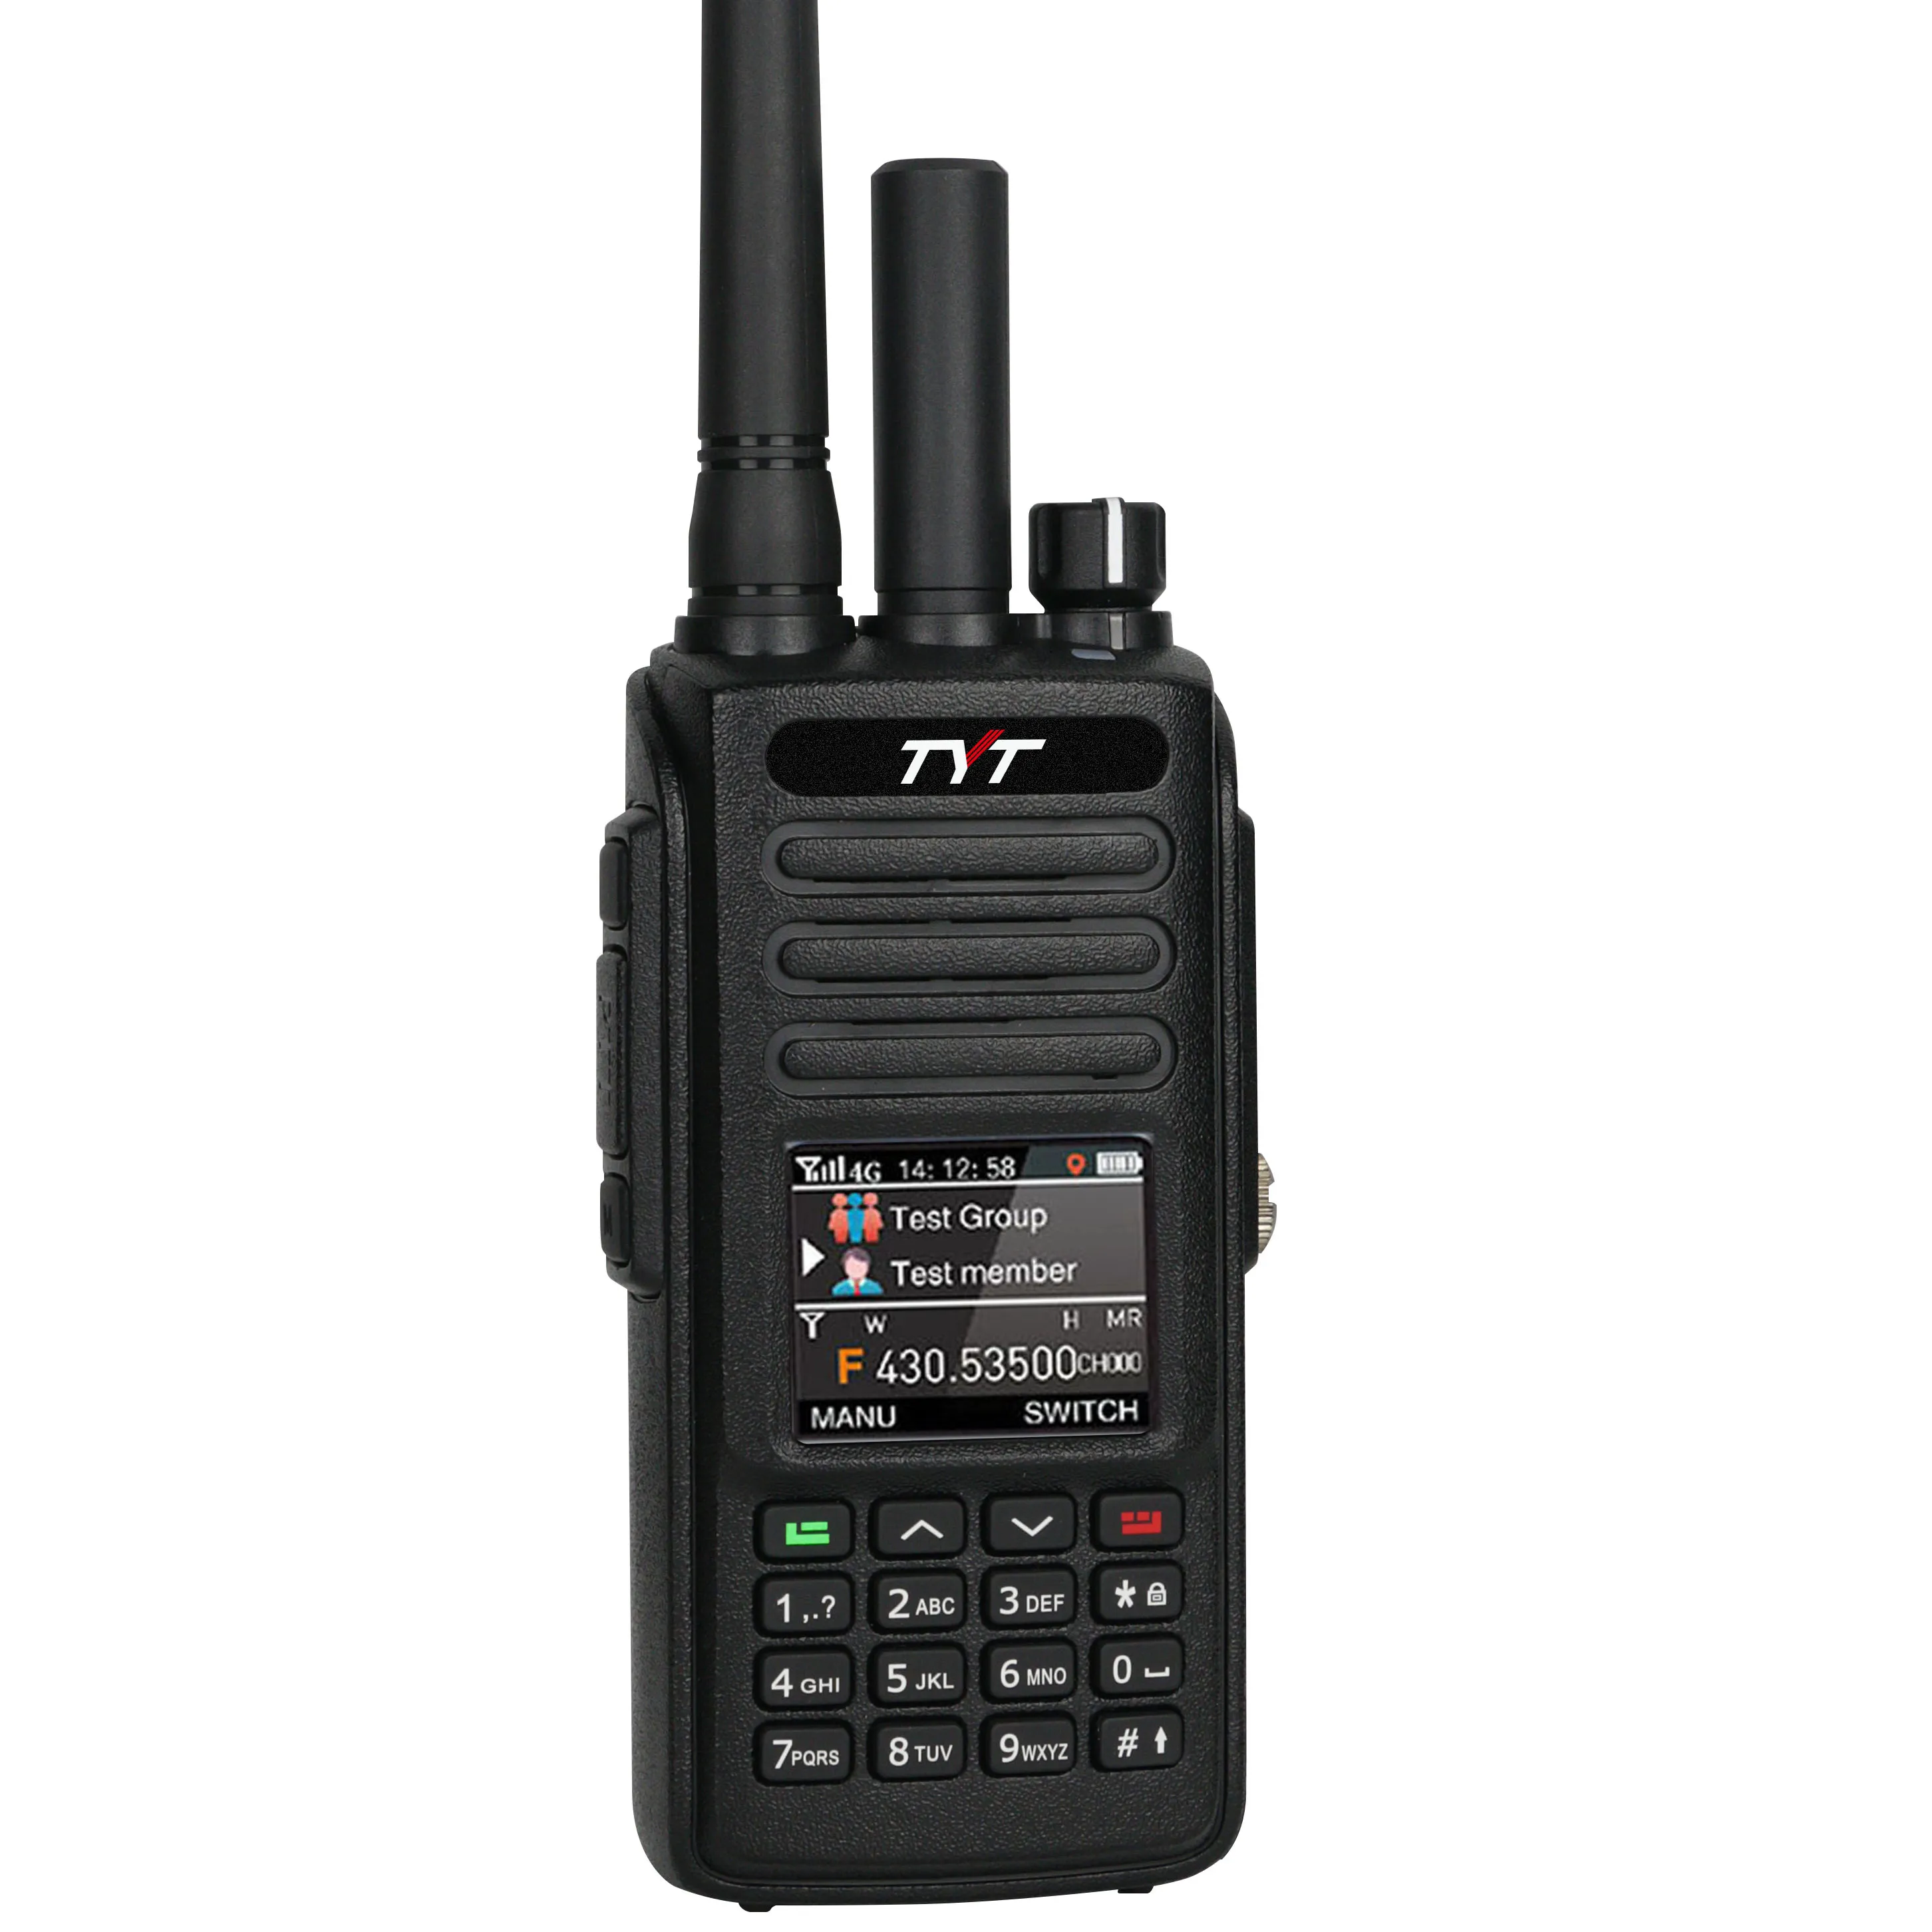 Repetidor walkie talkie POC + Cancelación de ruido analógico 4G radio económica IP68 resistente al agua